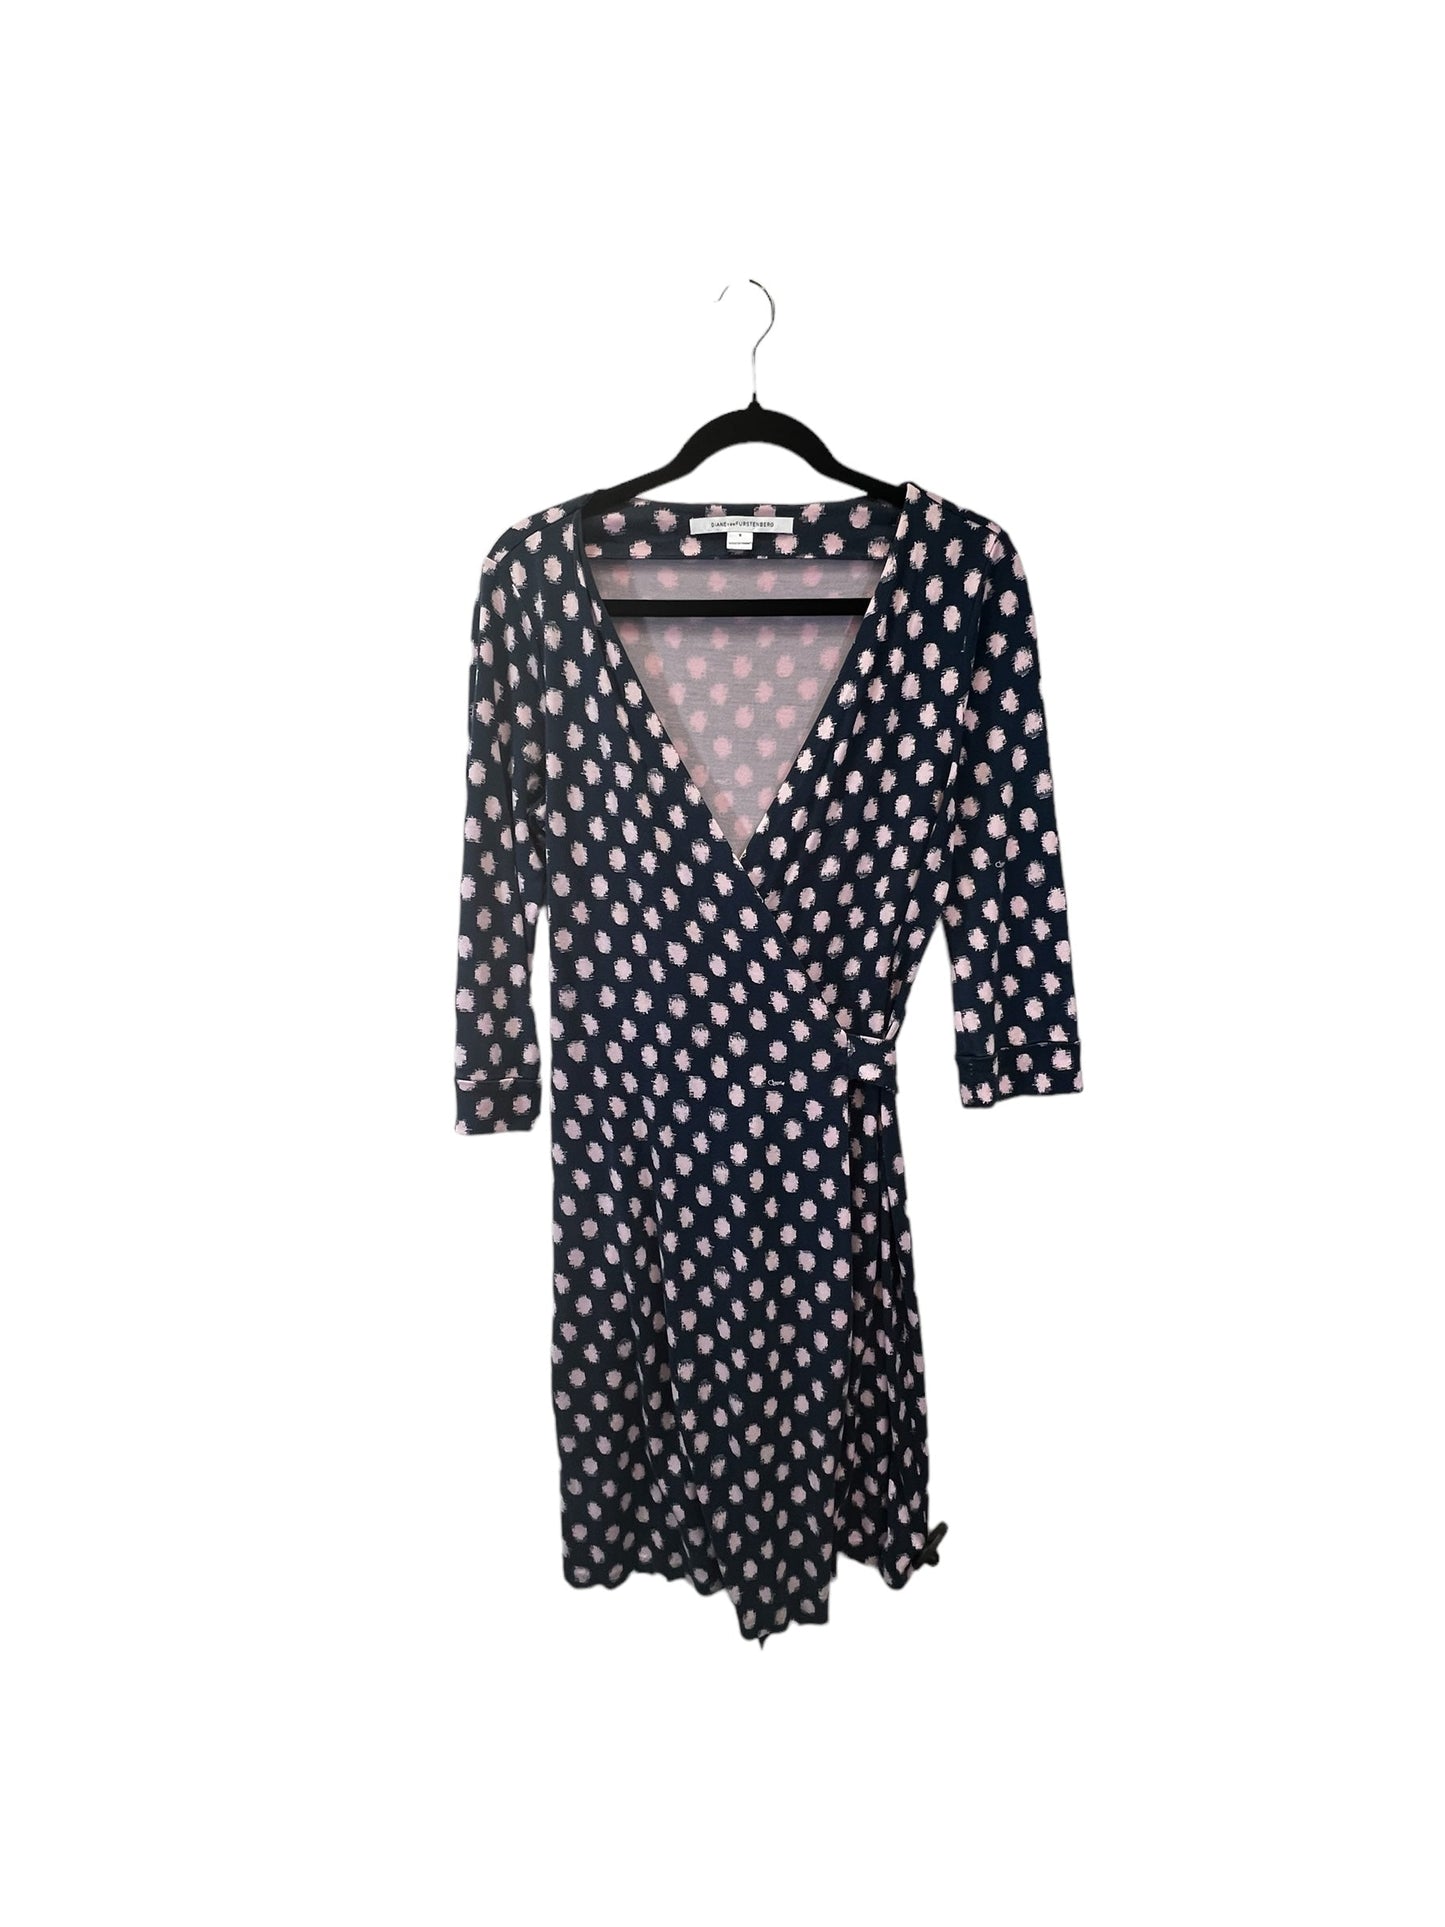 Blue & Pink Dress Designer Diane Von Furstenberg, Size 8